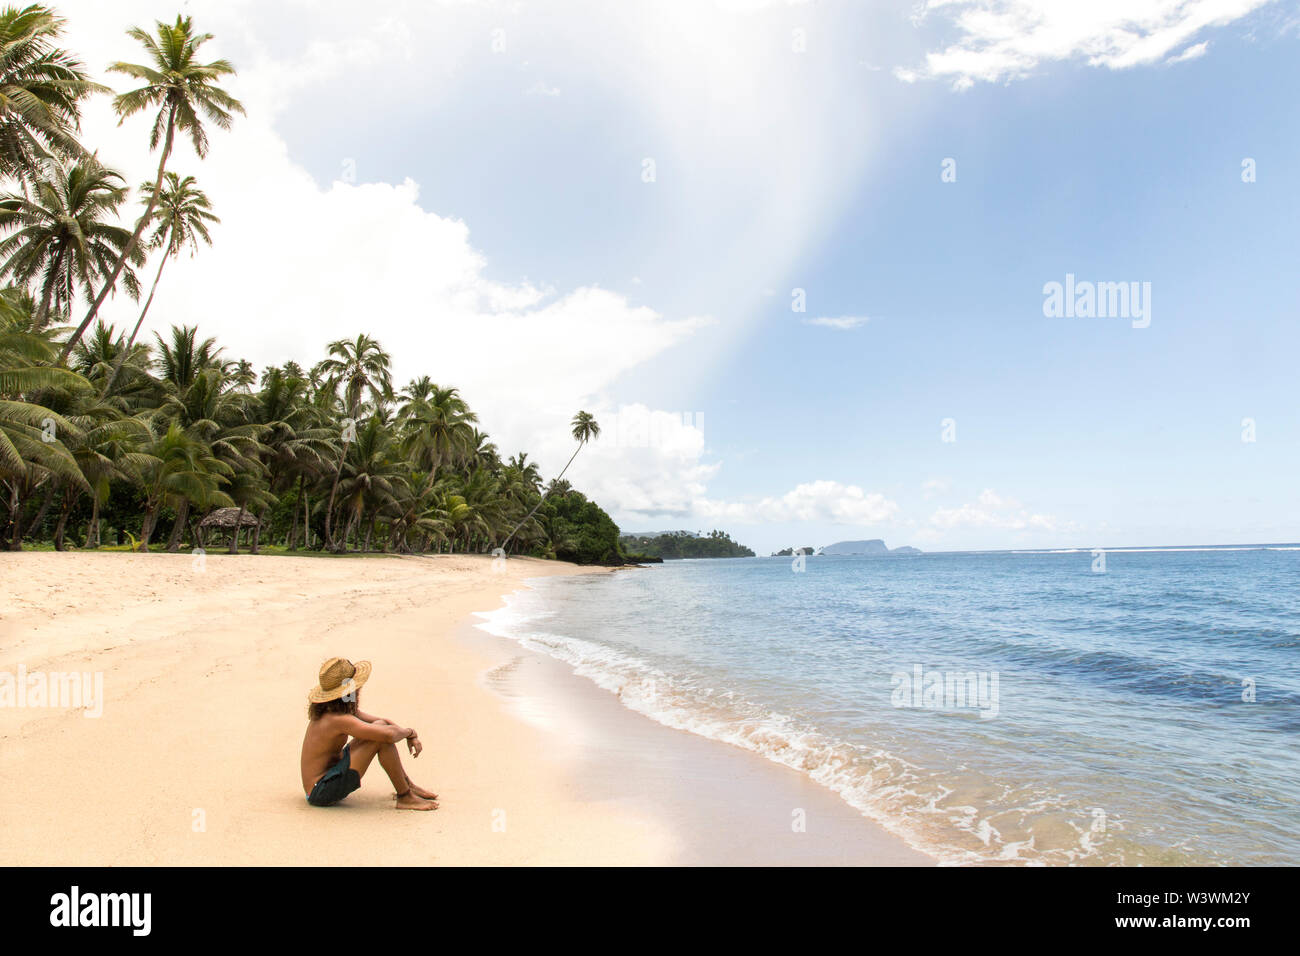 Un homme, wearing hat, détente à la plage tropicale de sable de Samoa Banque D'Images